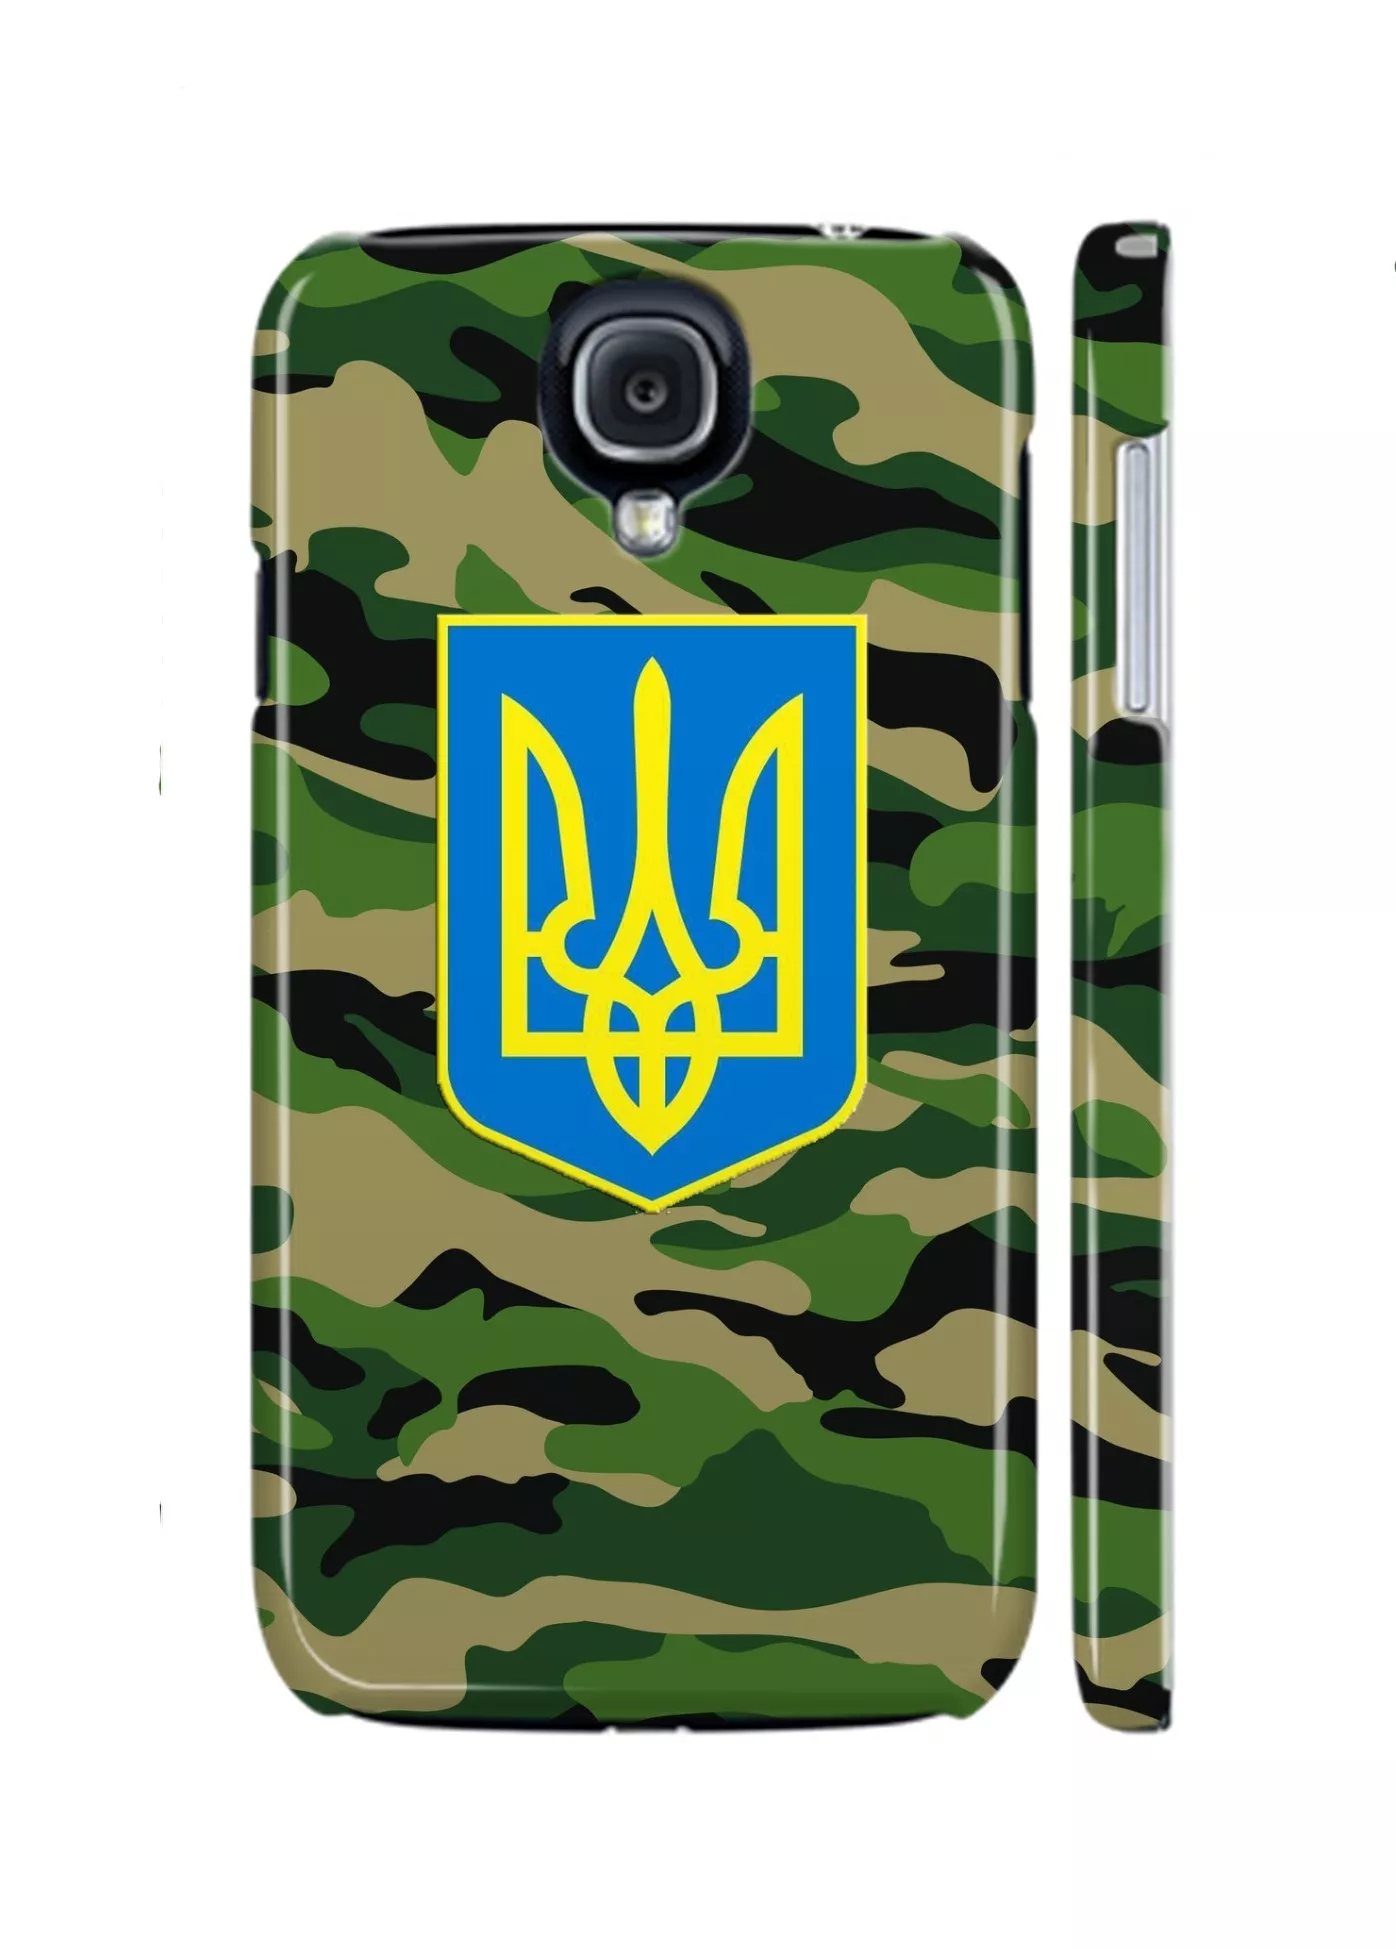 Патриотический чехол с гербом Украины на Galaxy S4